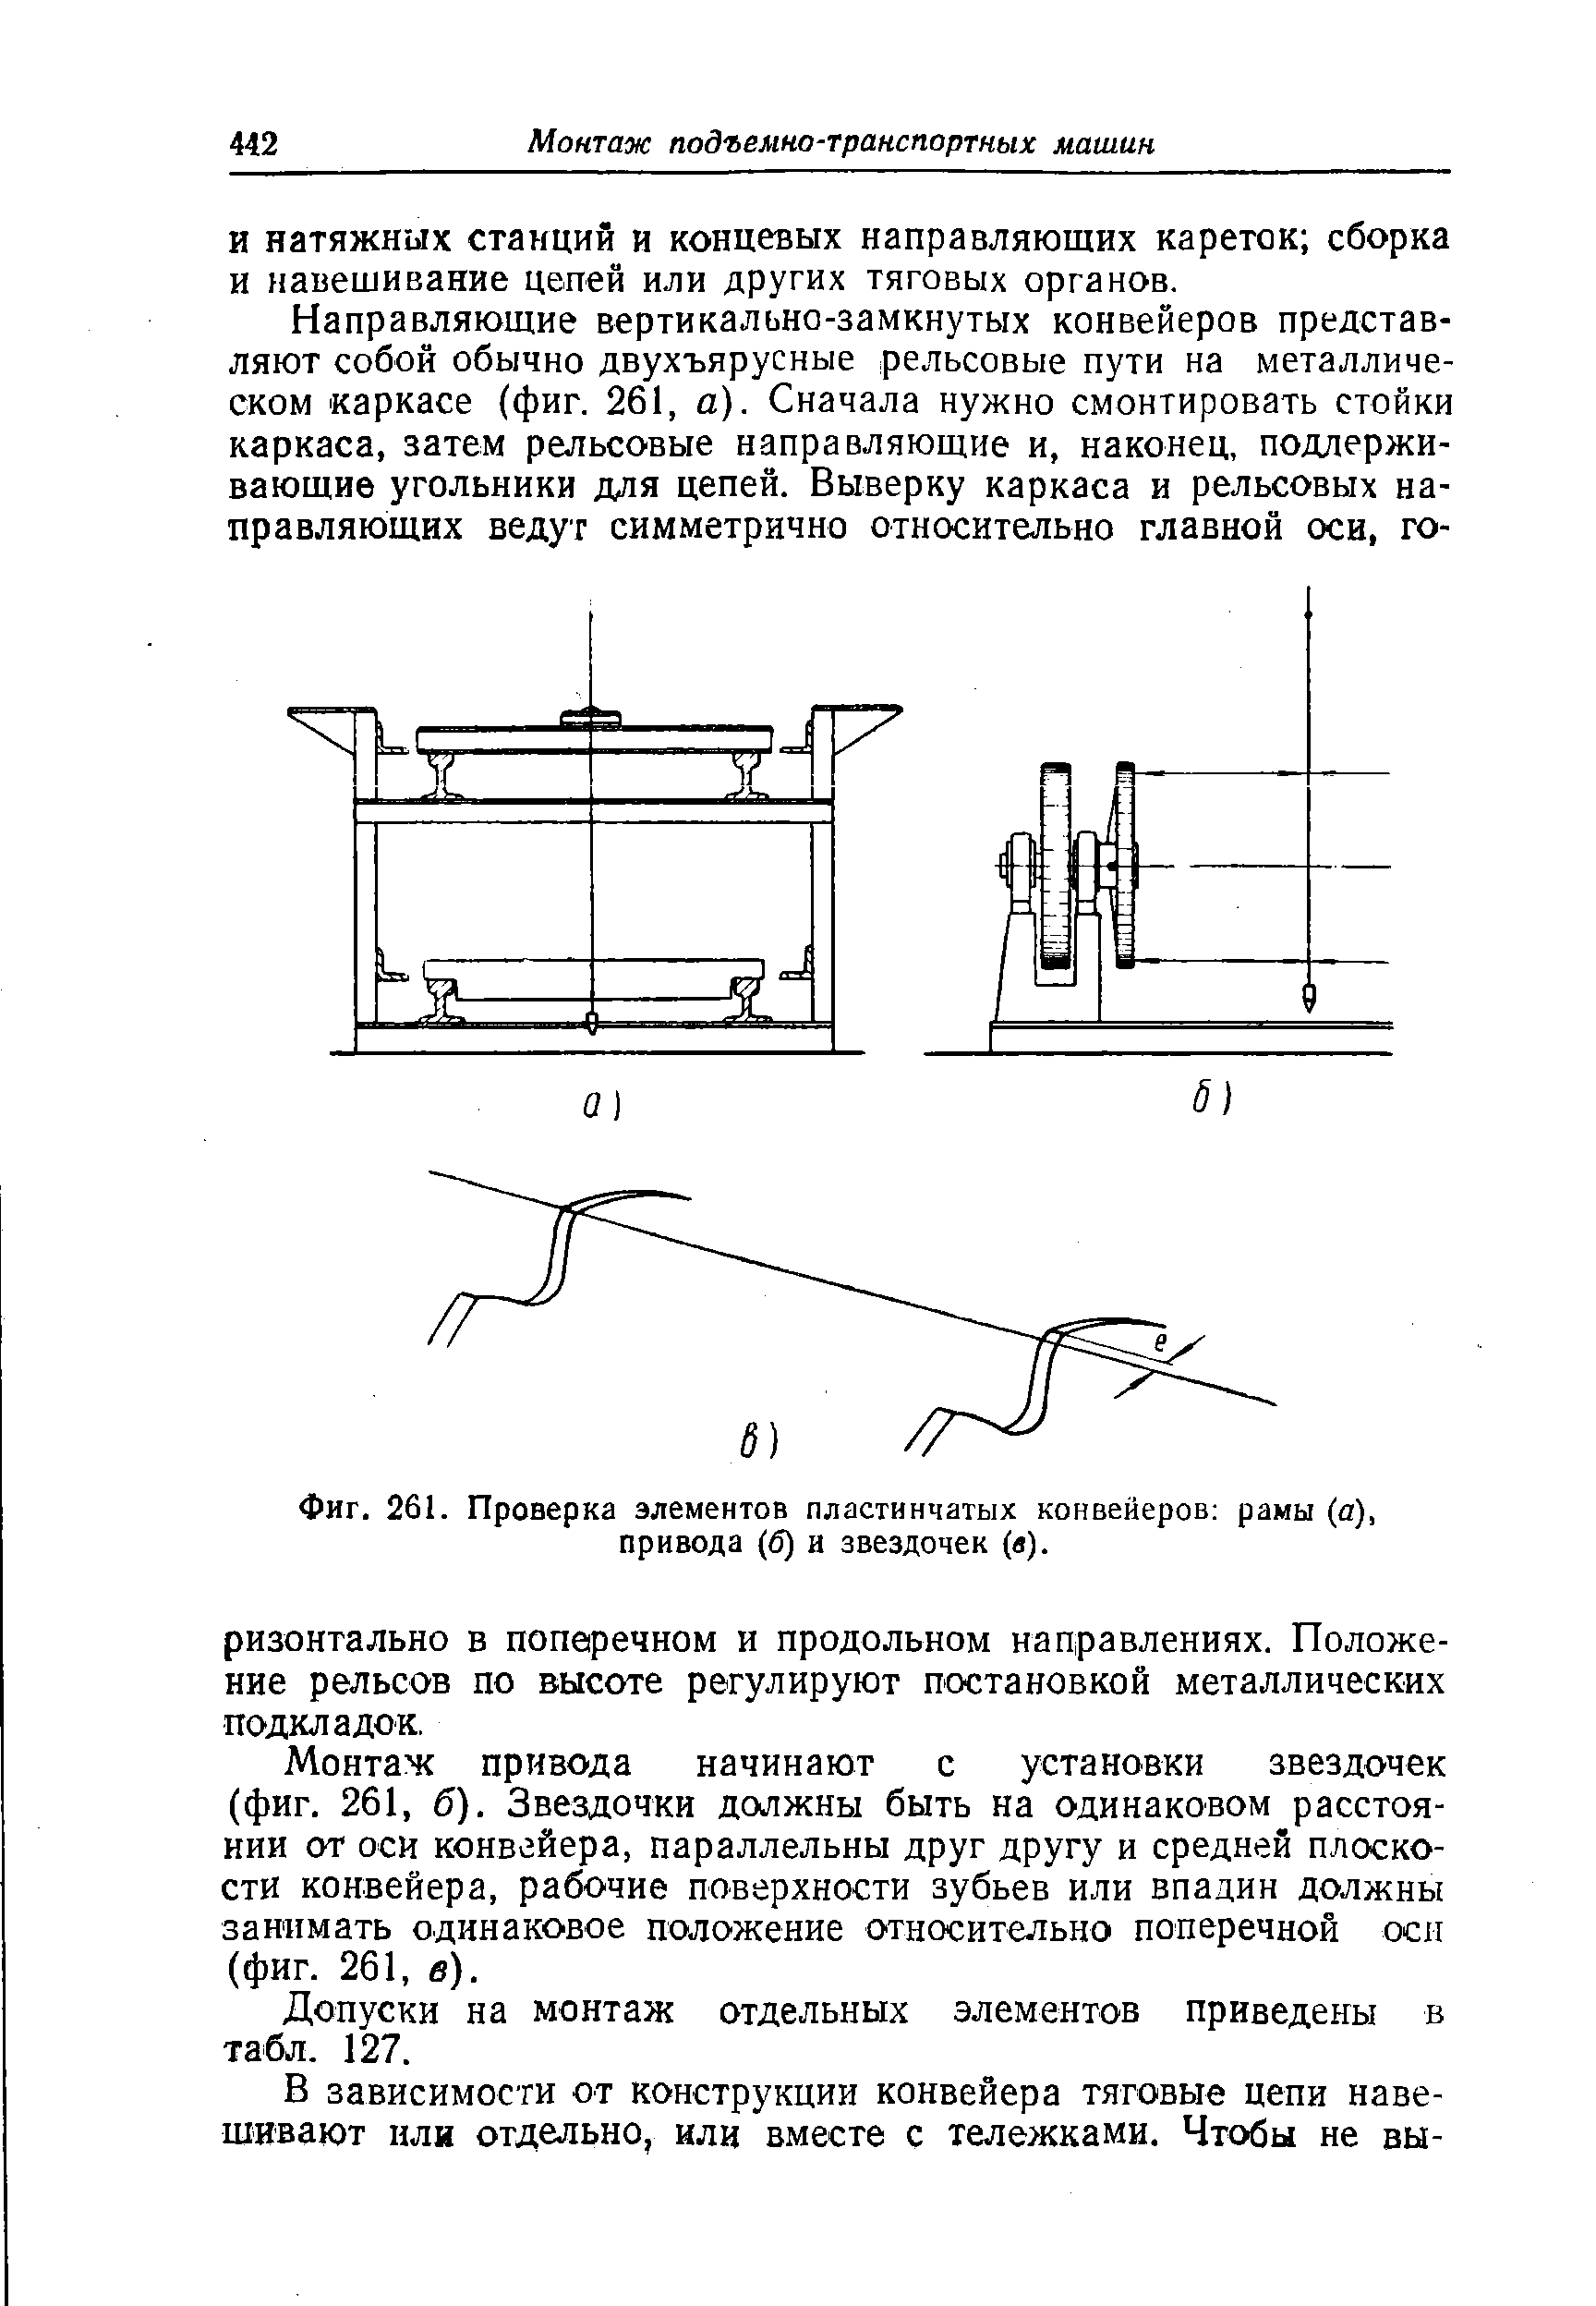 Фиг. 261. Проверка элементов пластинчатых конвейеров рамы (а), привода (б) и звездочек (в).
